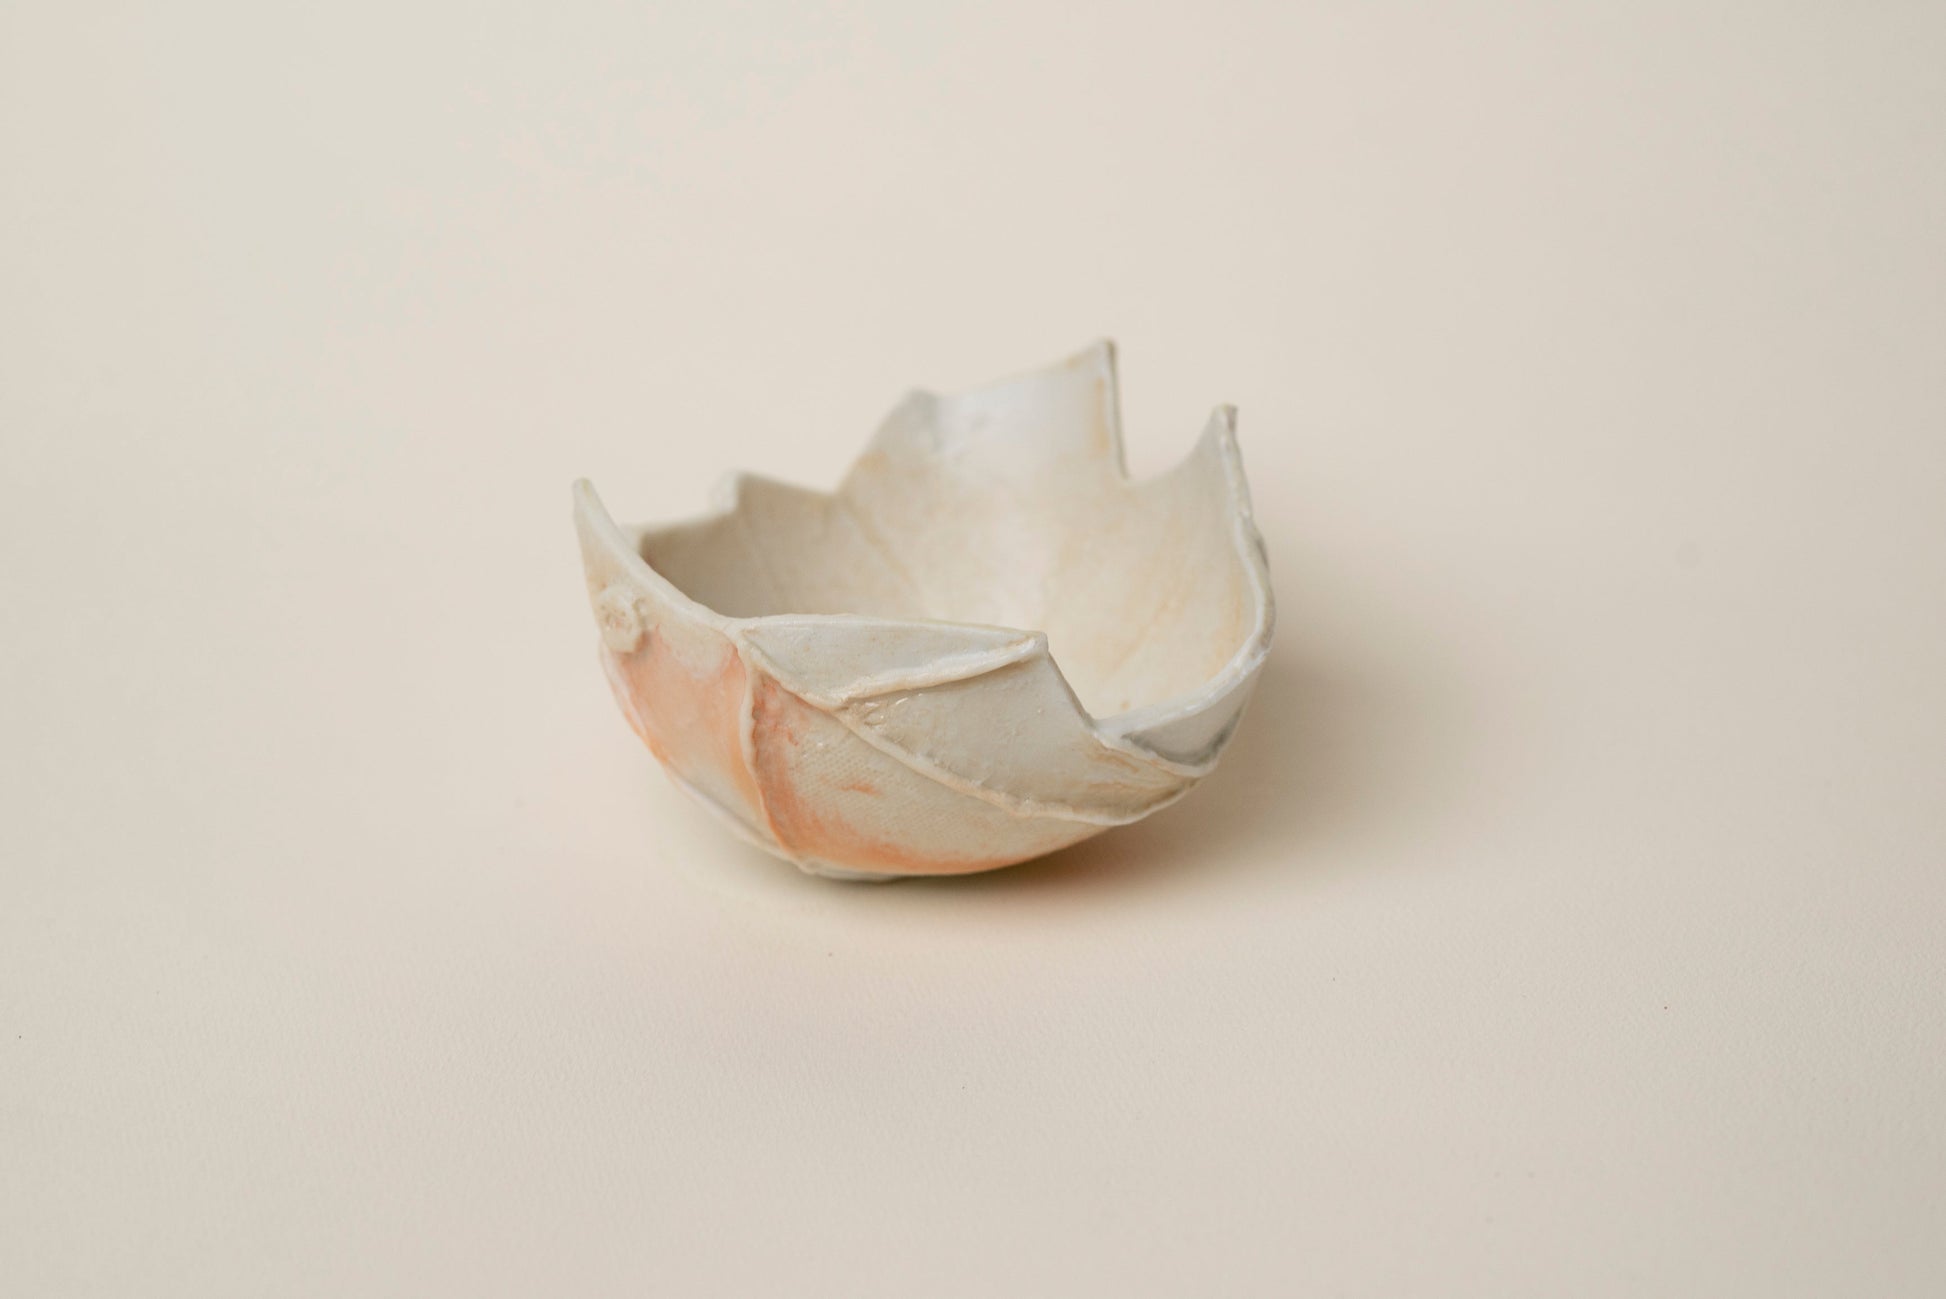 Wood firing porcelain bowl - Mi Spacium Design Studio - ceramic